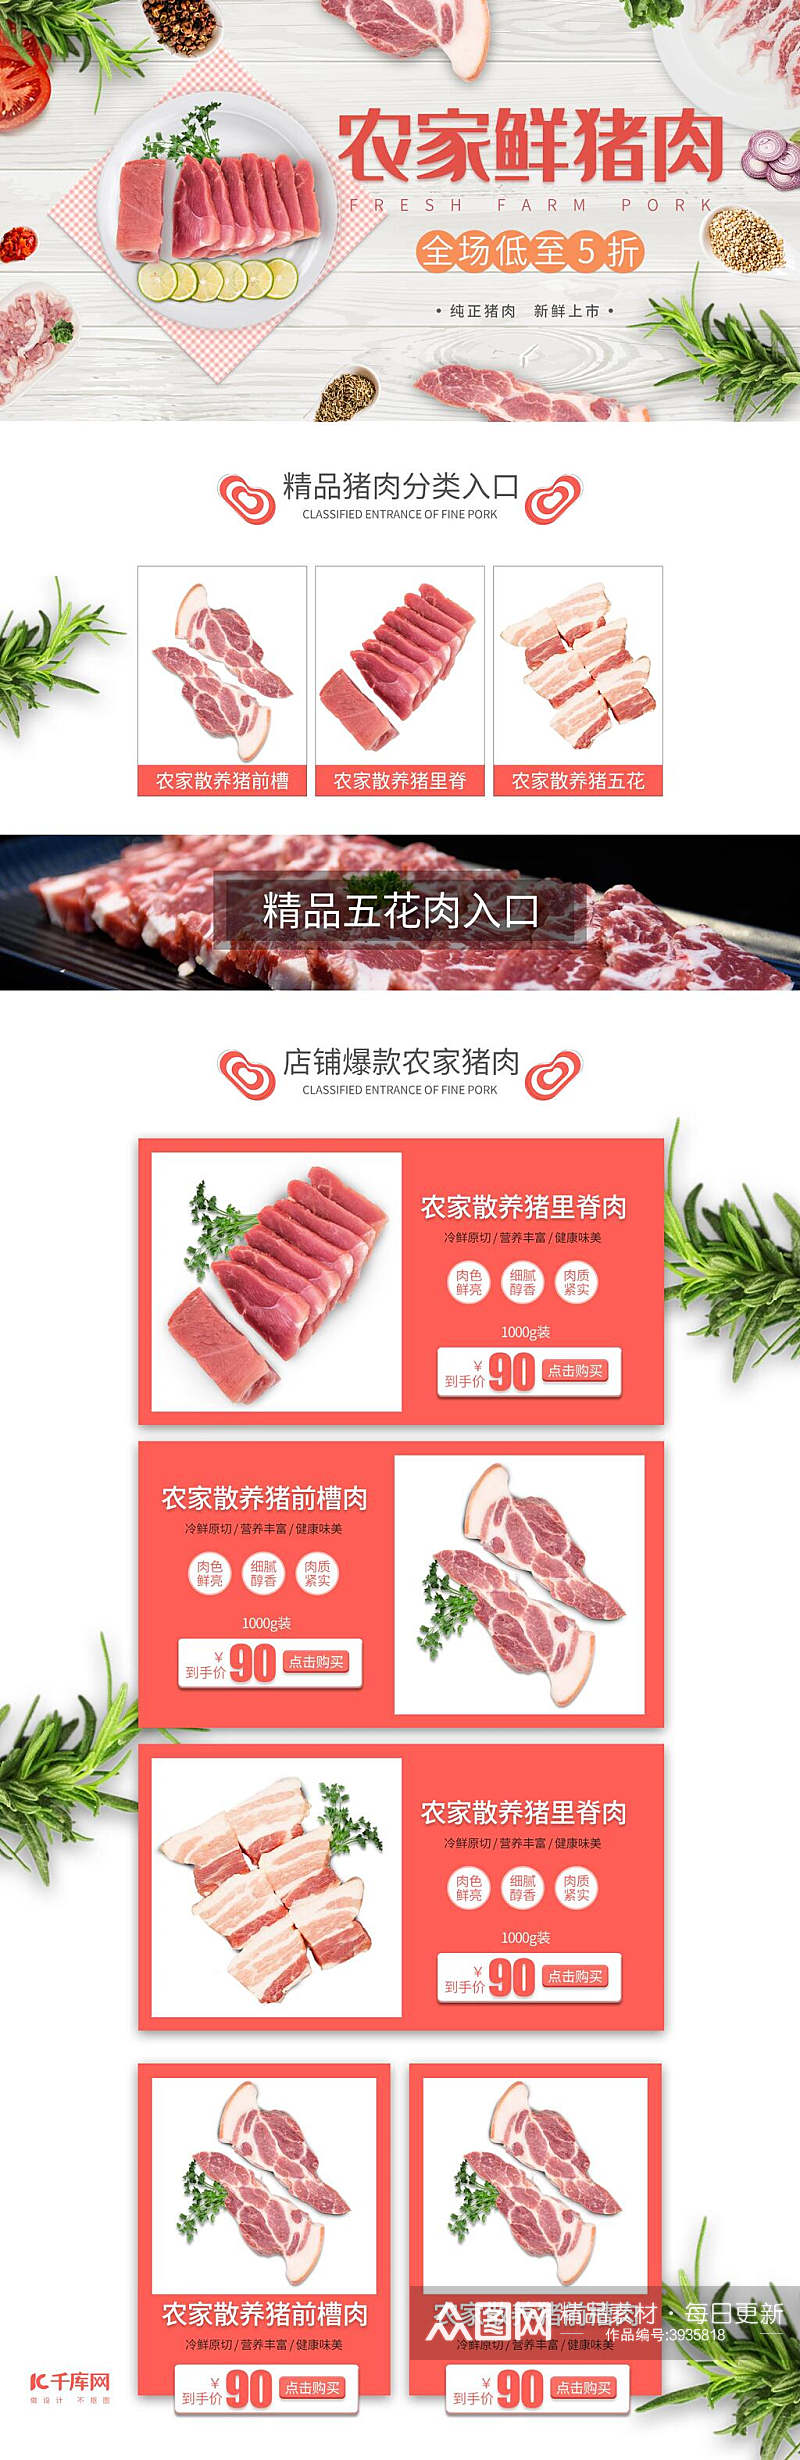 农家鲜猪肉促销活动电商首页素材